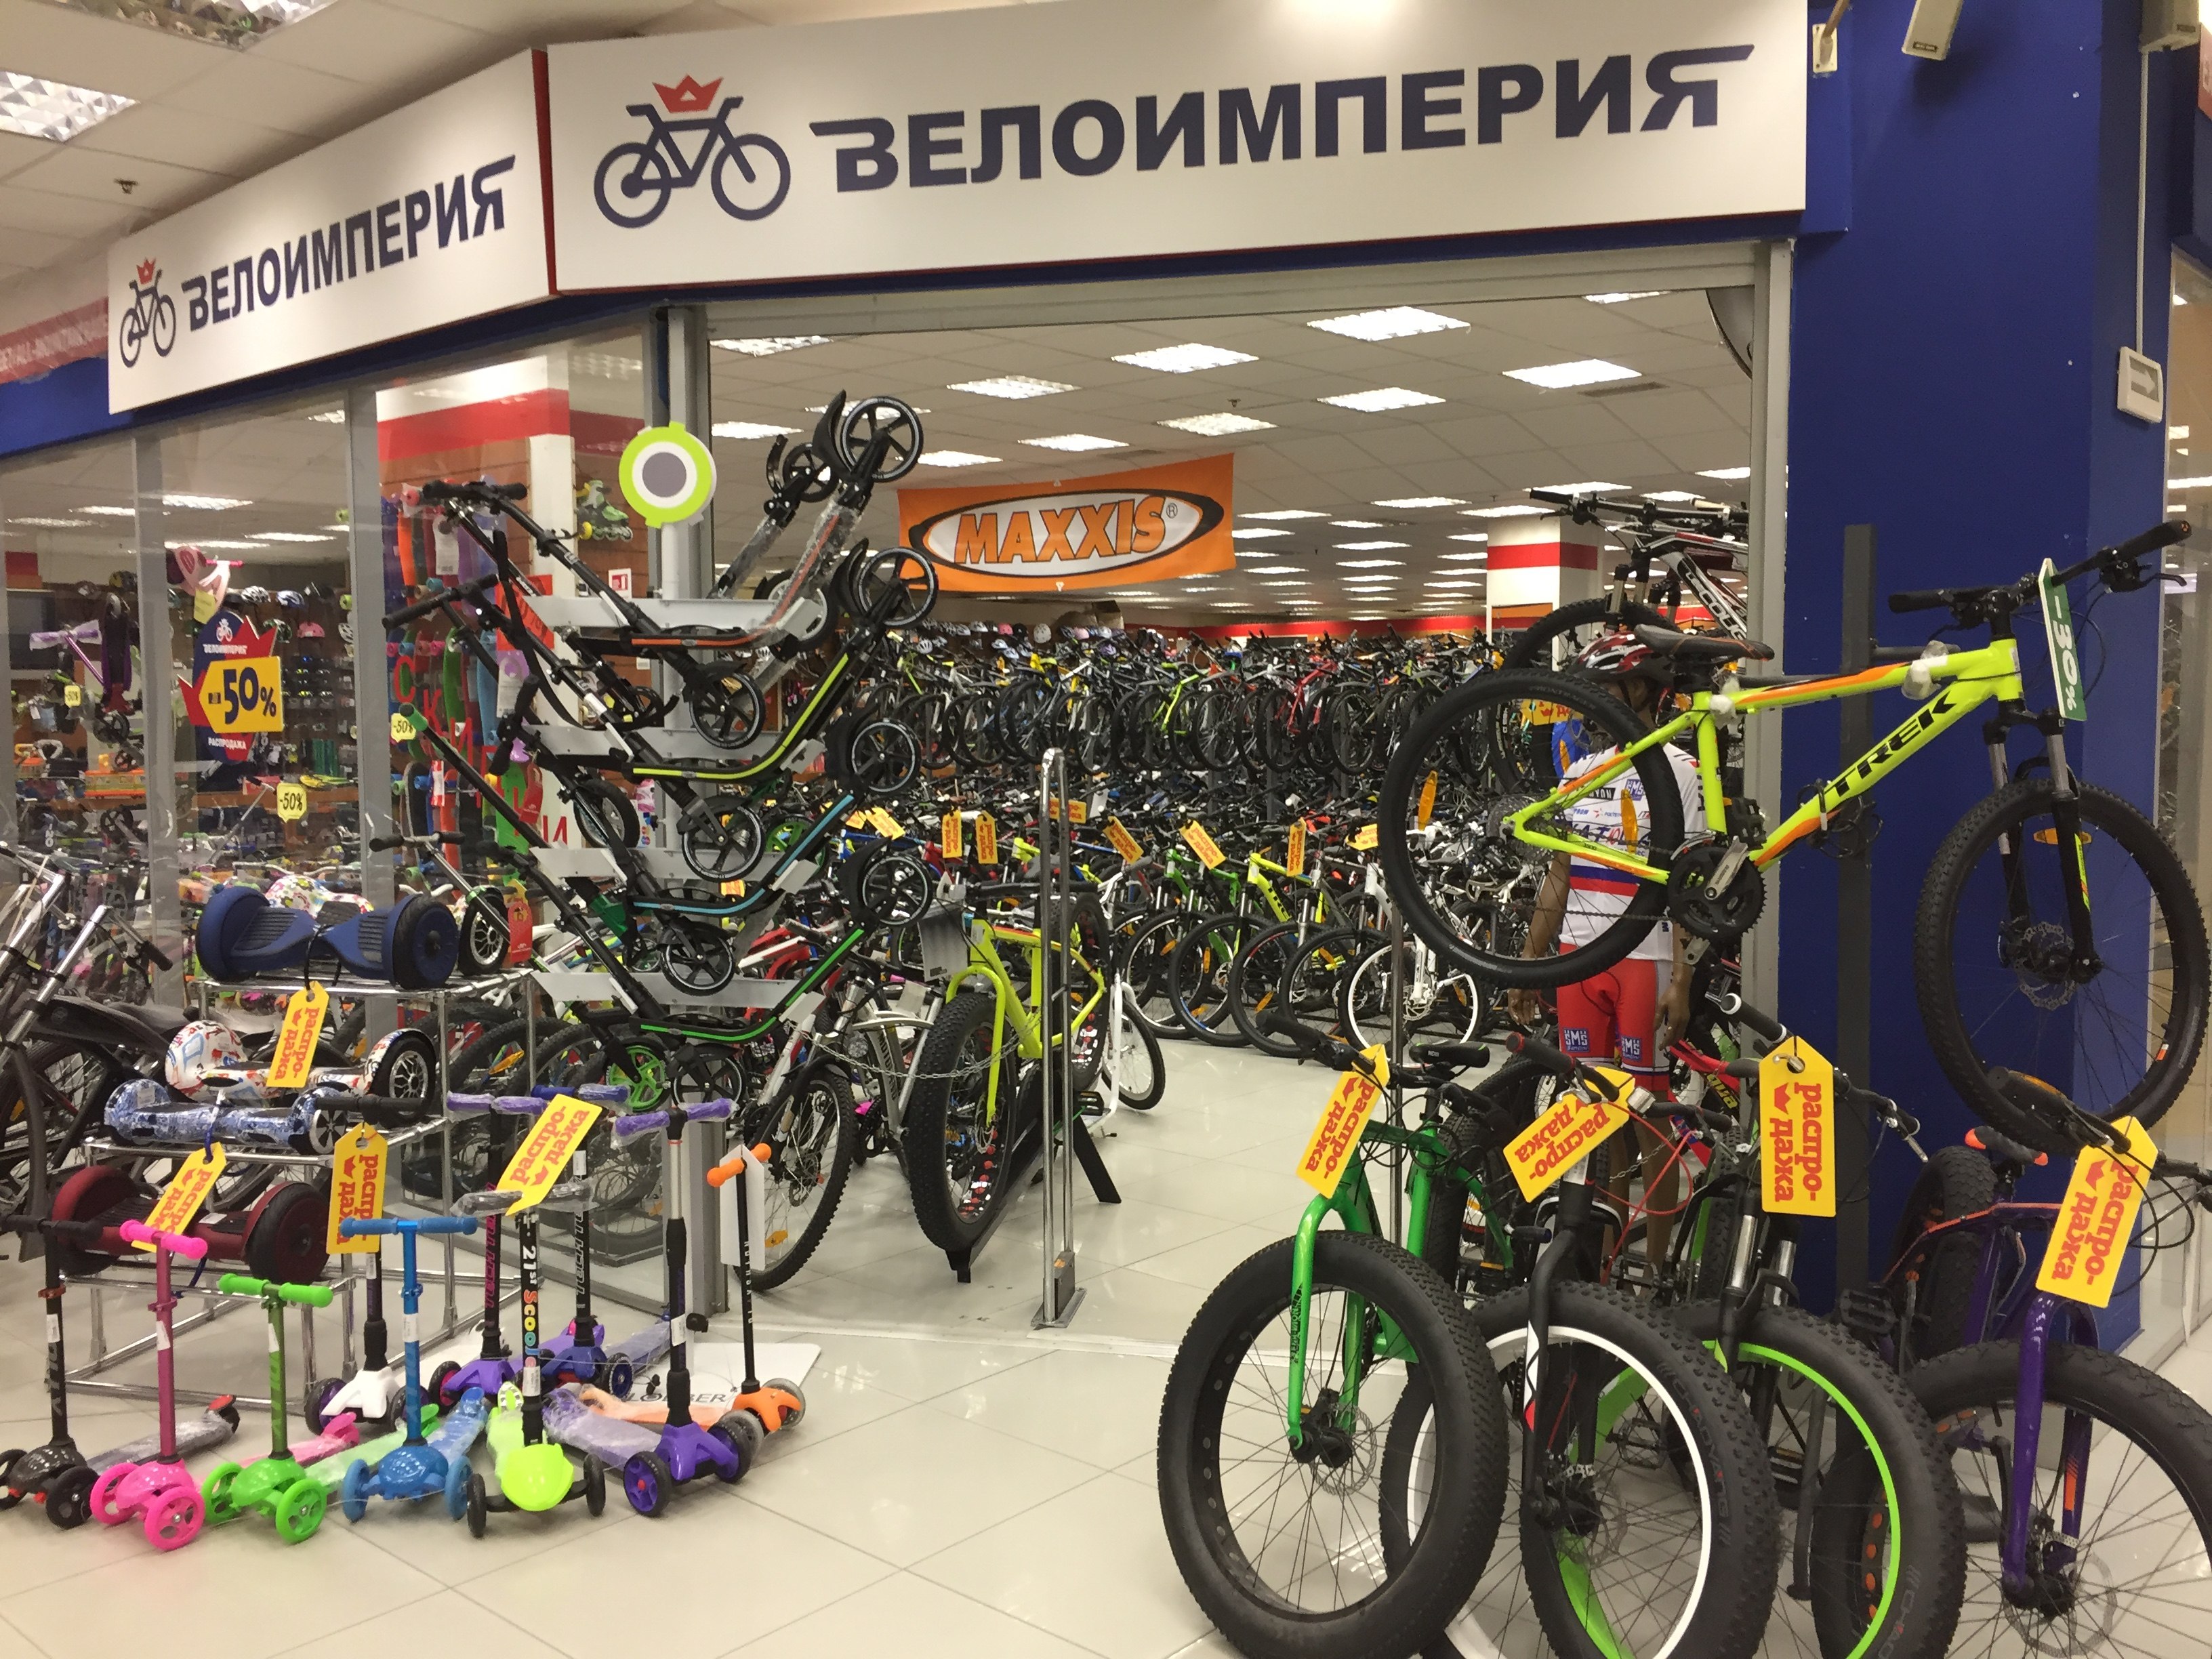 Купить велосипед в кемерово. Магазин велосипедов. Велосипедный магазин. Европейский магазин велосипедов. Самые лучшие магазины велосипедов.